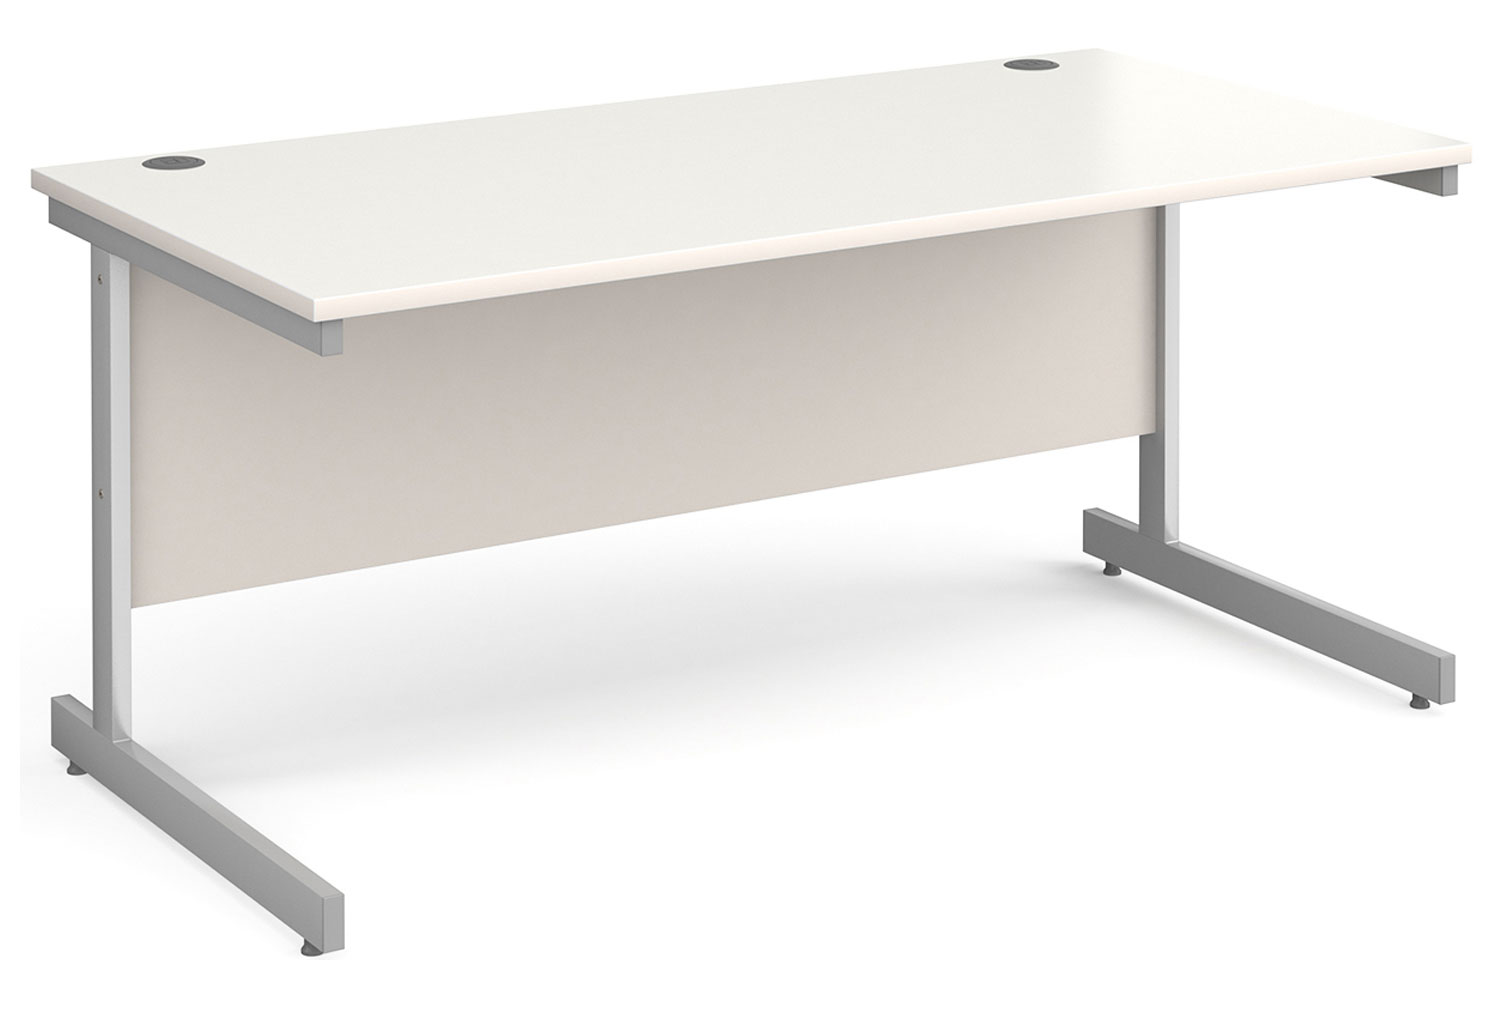 All White C-Leg Rectangular Office Desk, 160wx80dx73h (cm), Fully Installed